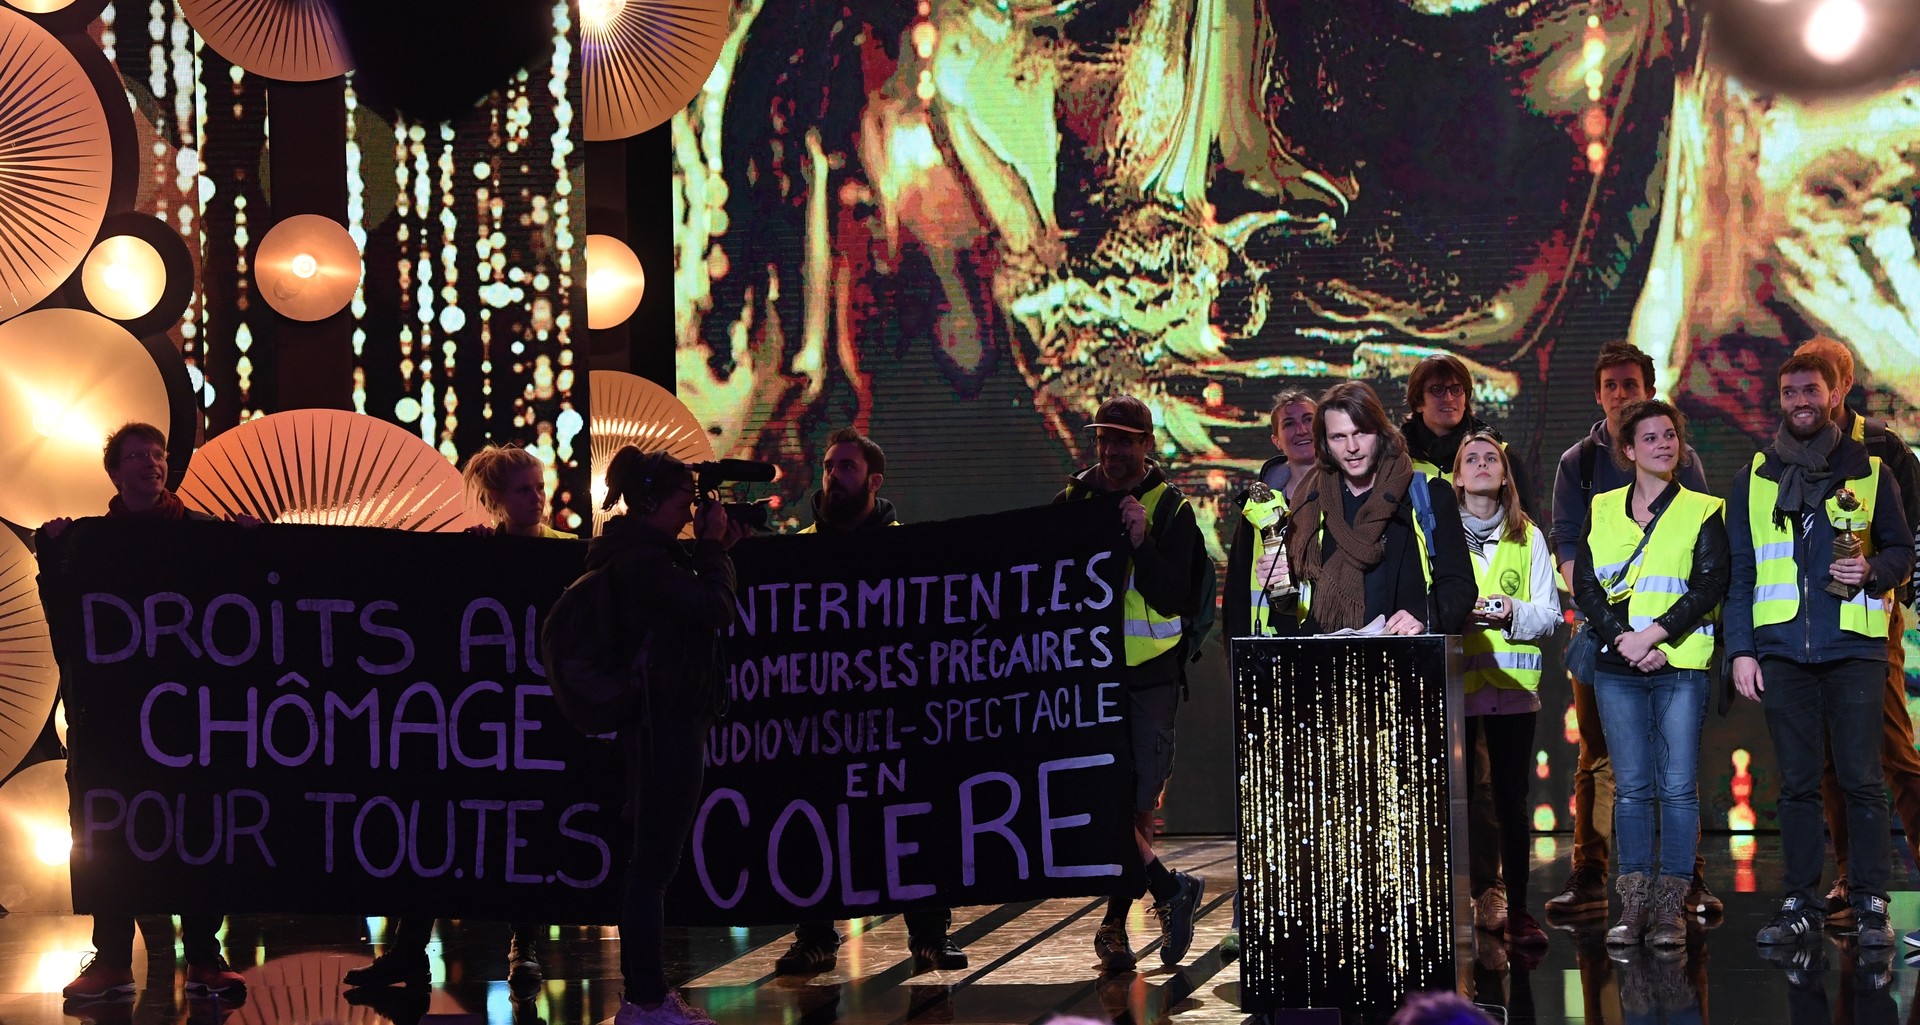 «Droits au chômage pour tou.te.s» : des Gilets jaunes perturbent la cérémonie des Molières (IMAGES)